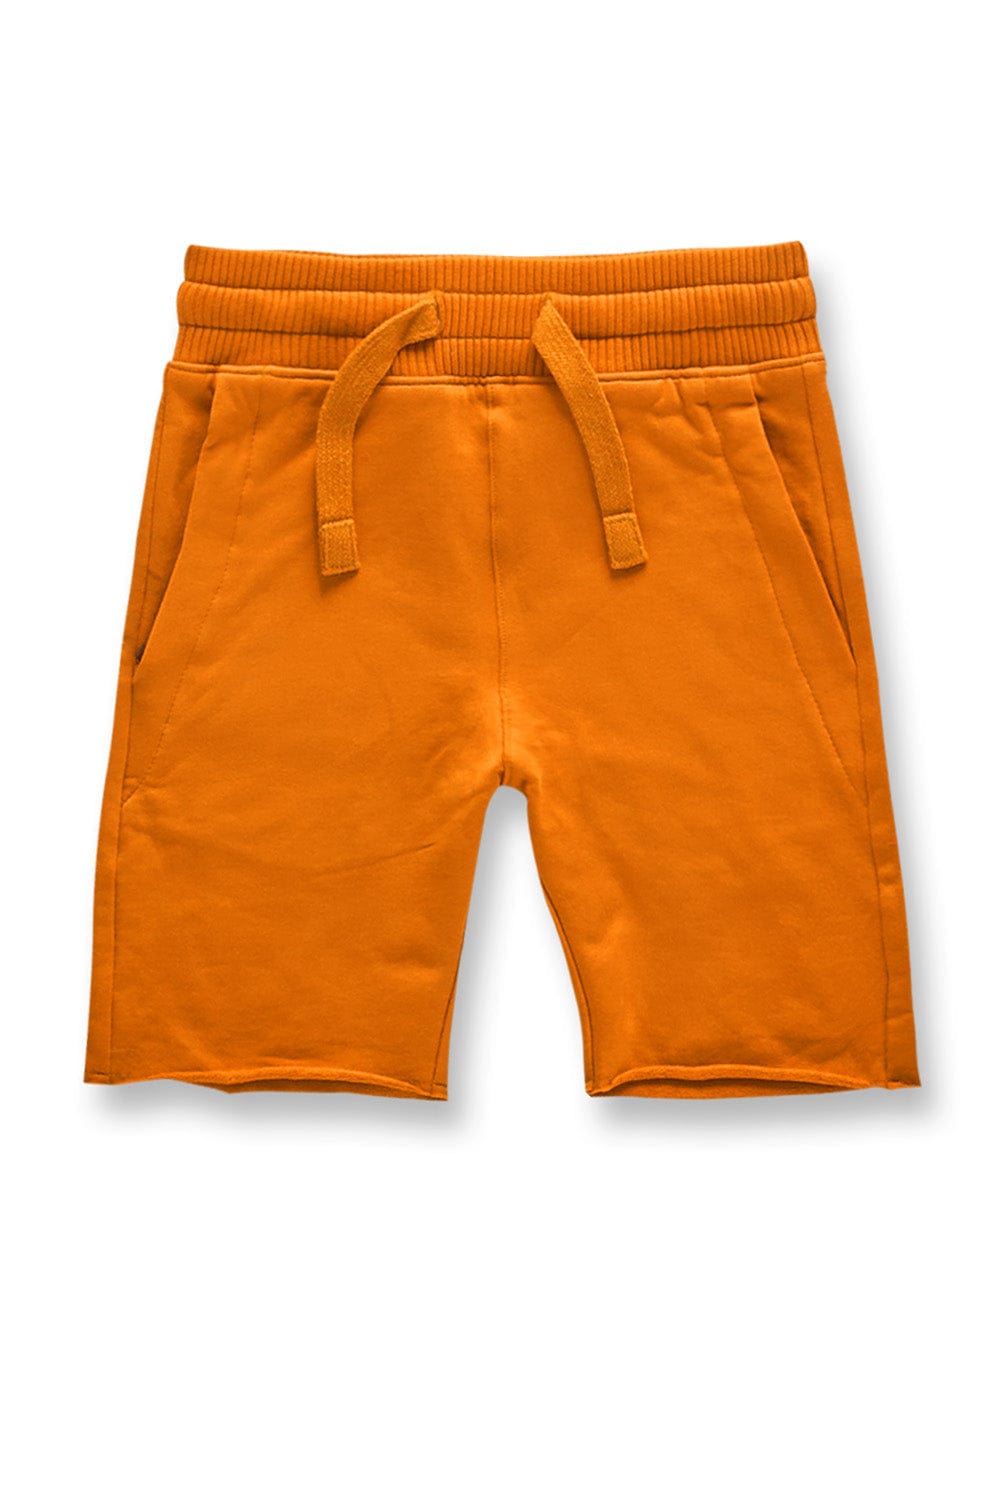 JC Kids Kids Palma French Terry Shorts (Core Colors) Orange / 2